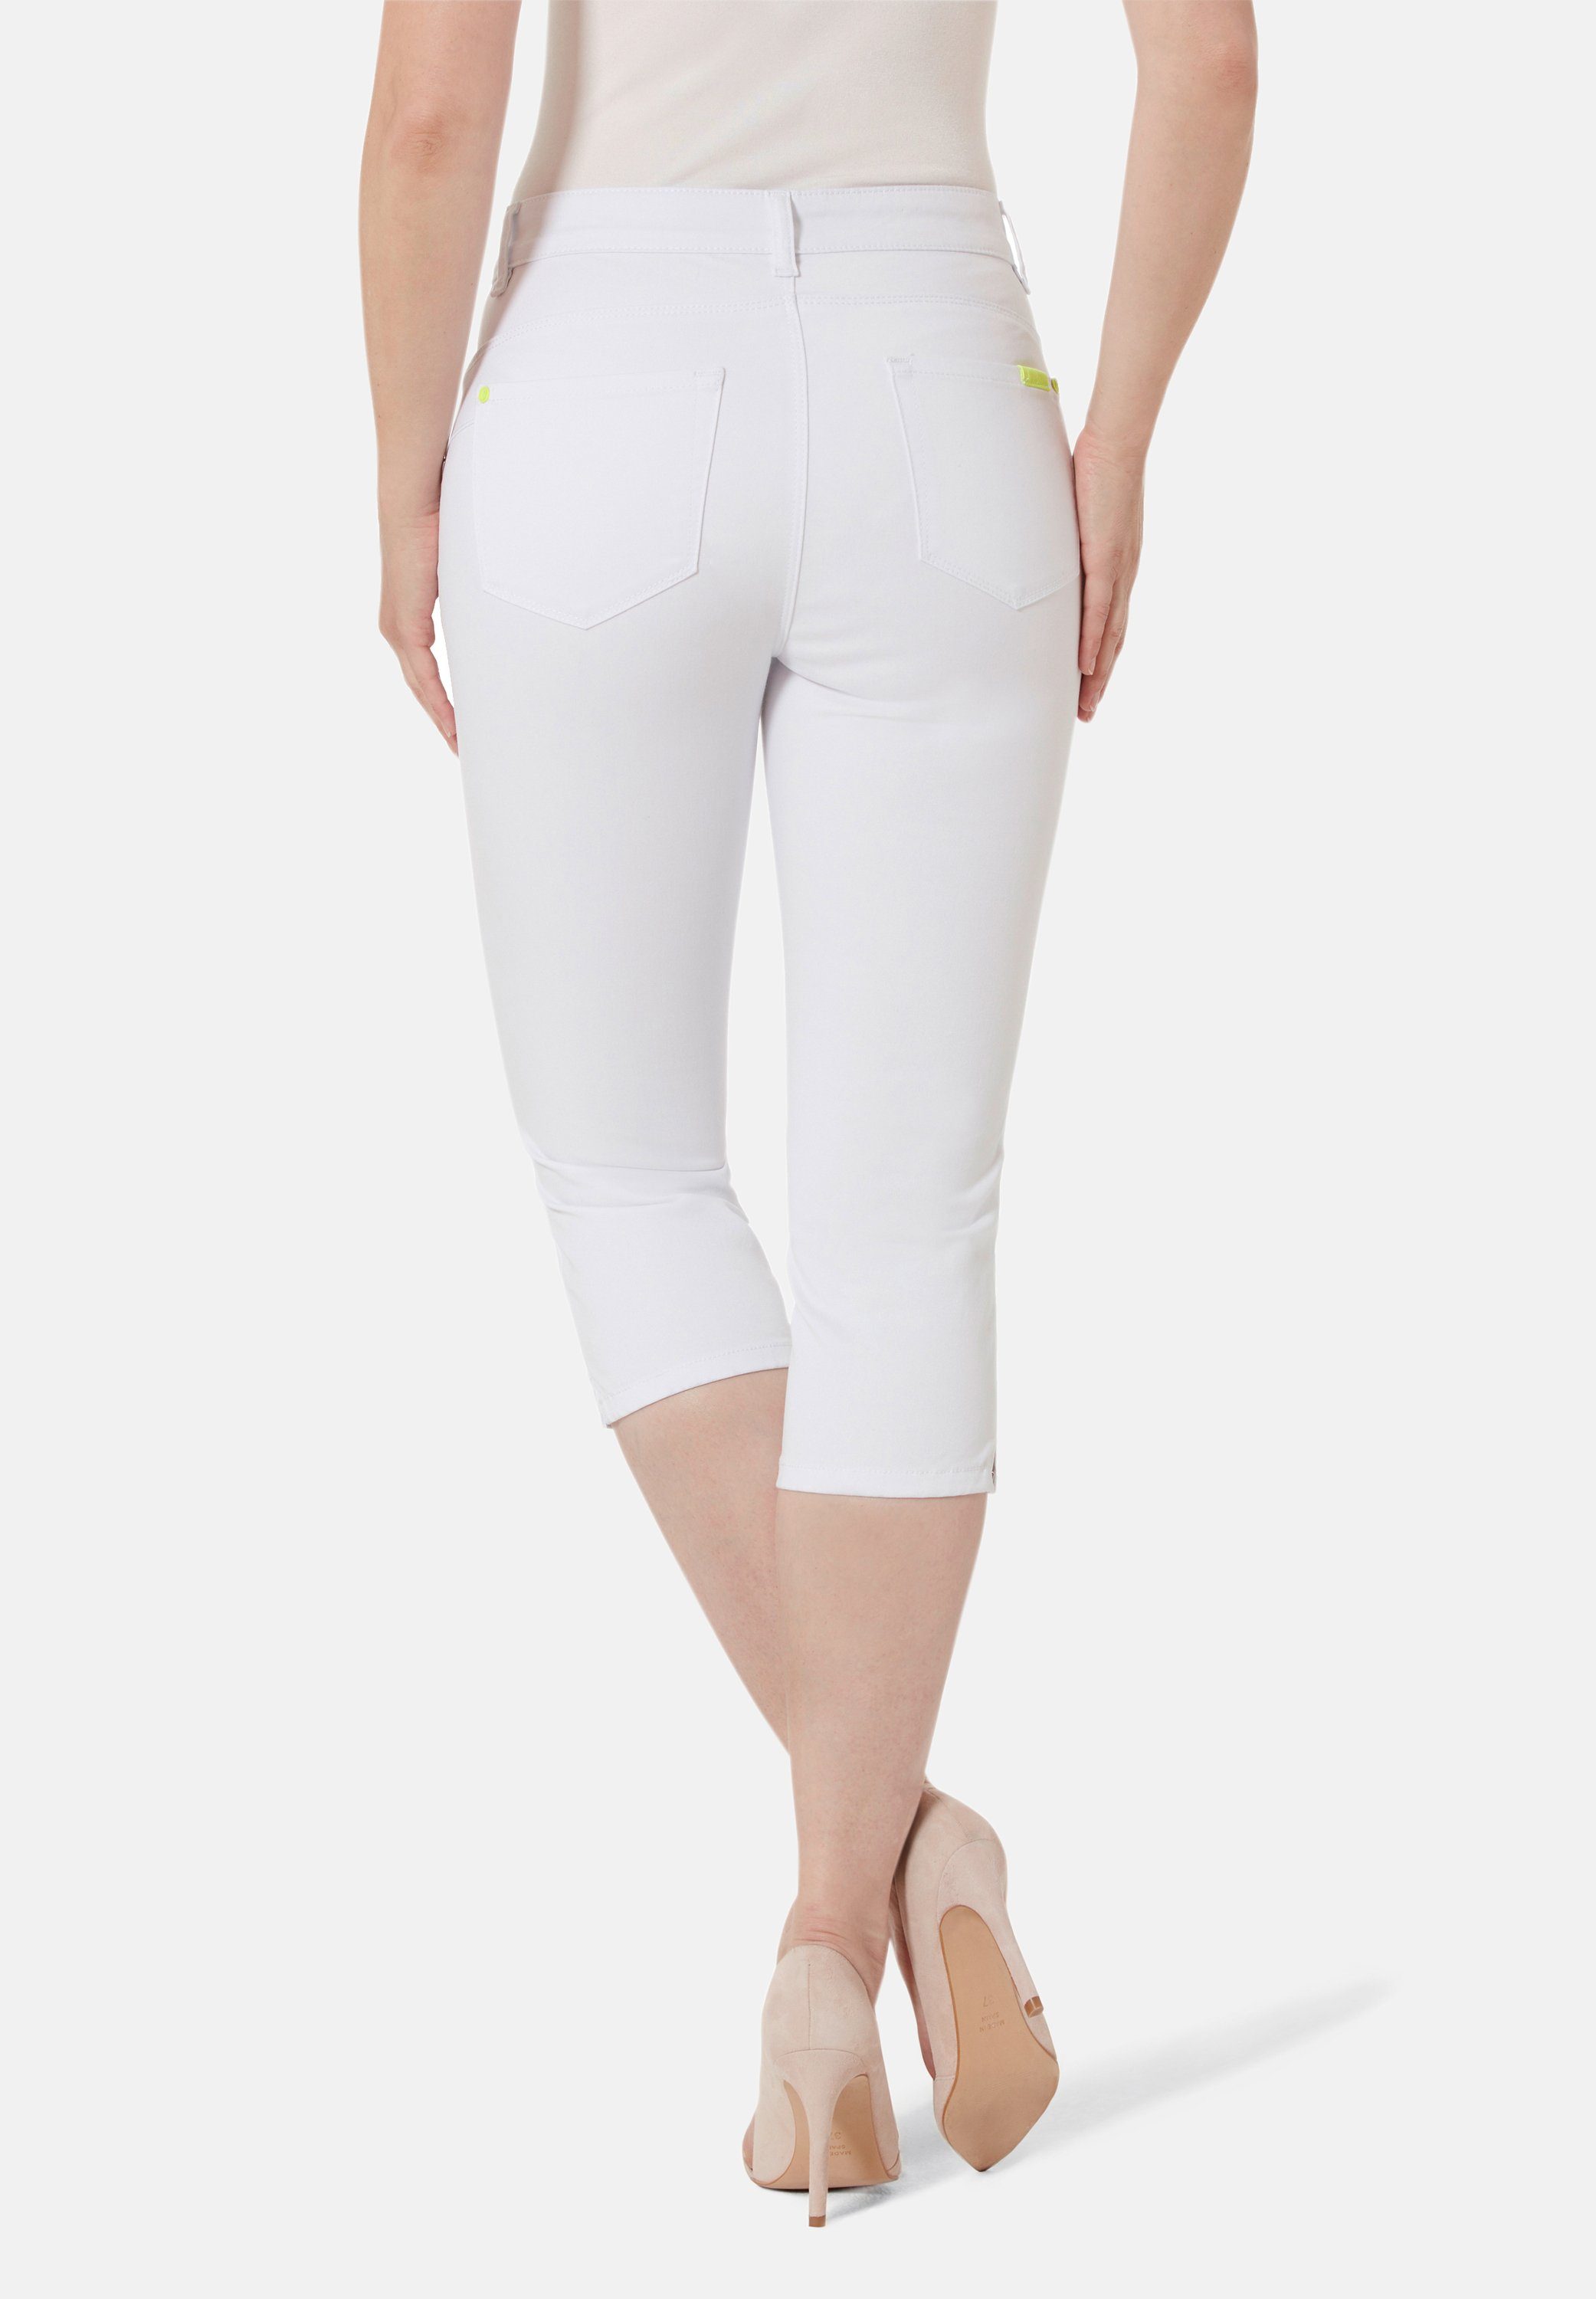 STOOKER WOMEN Skinny 7/8-Jeans Denim Fit Capri white